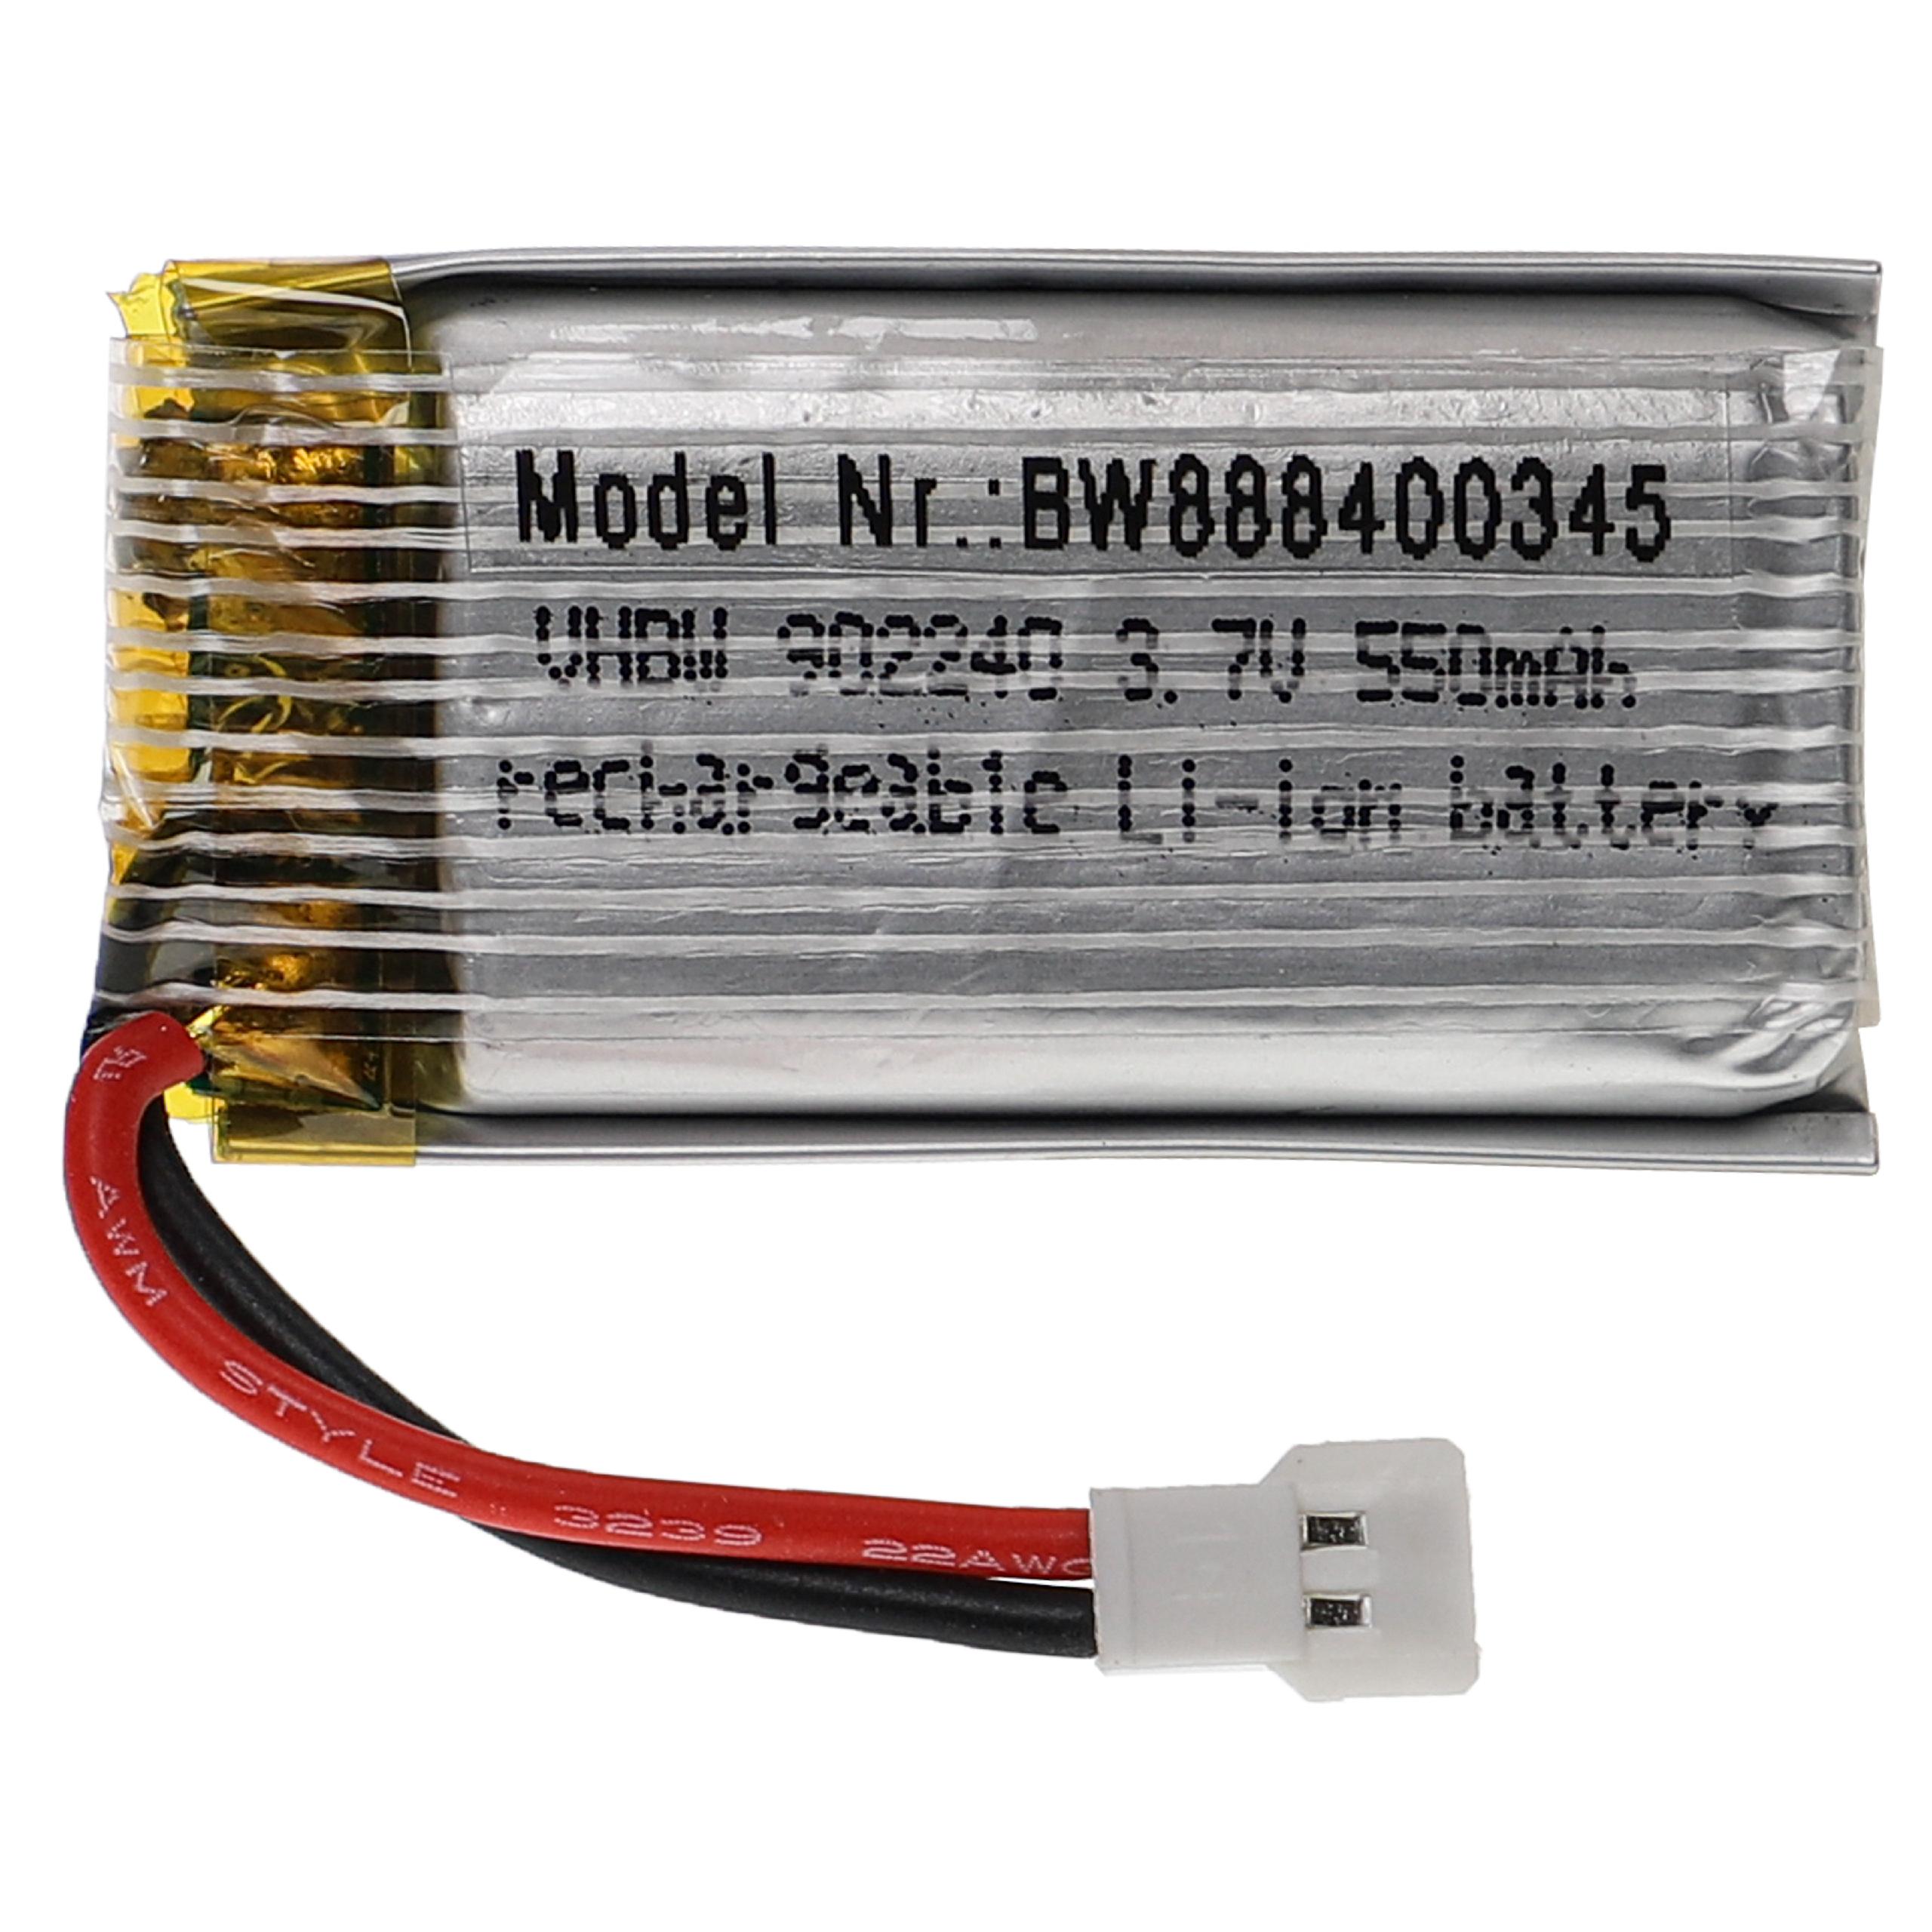 Batería para dispositivos modelismo - 550 mAh 3,7 V Li-poli, XH 2.54 2P